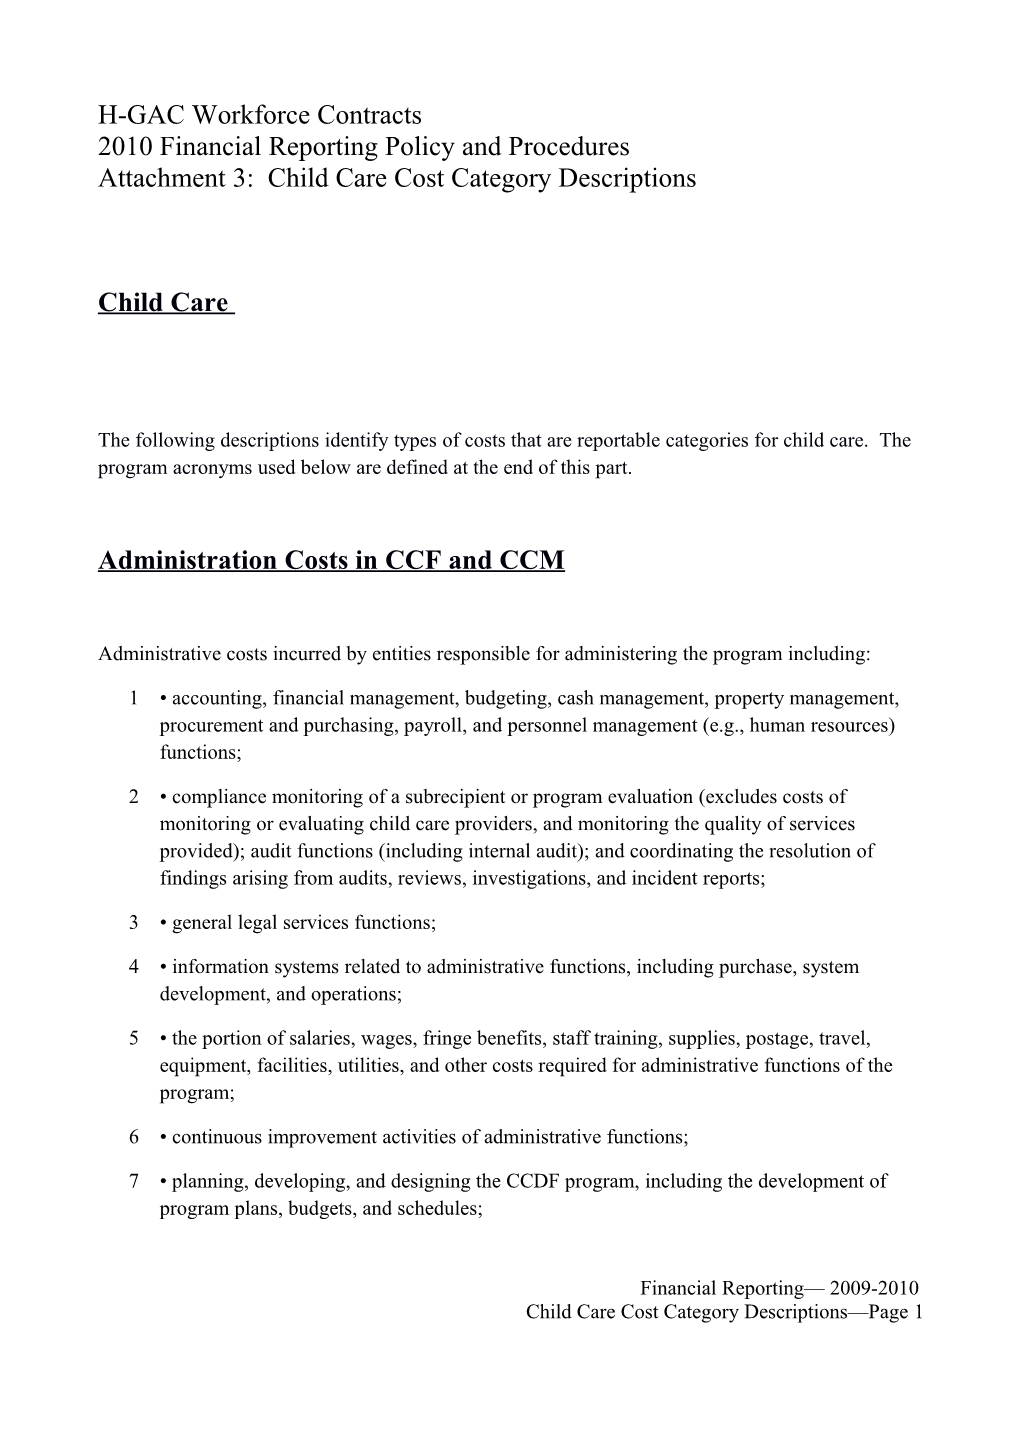 WD Letter 25-08, Attachment 2, Cost Category Descriptions (Non-Child Care)